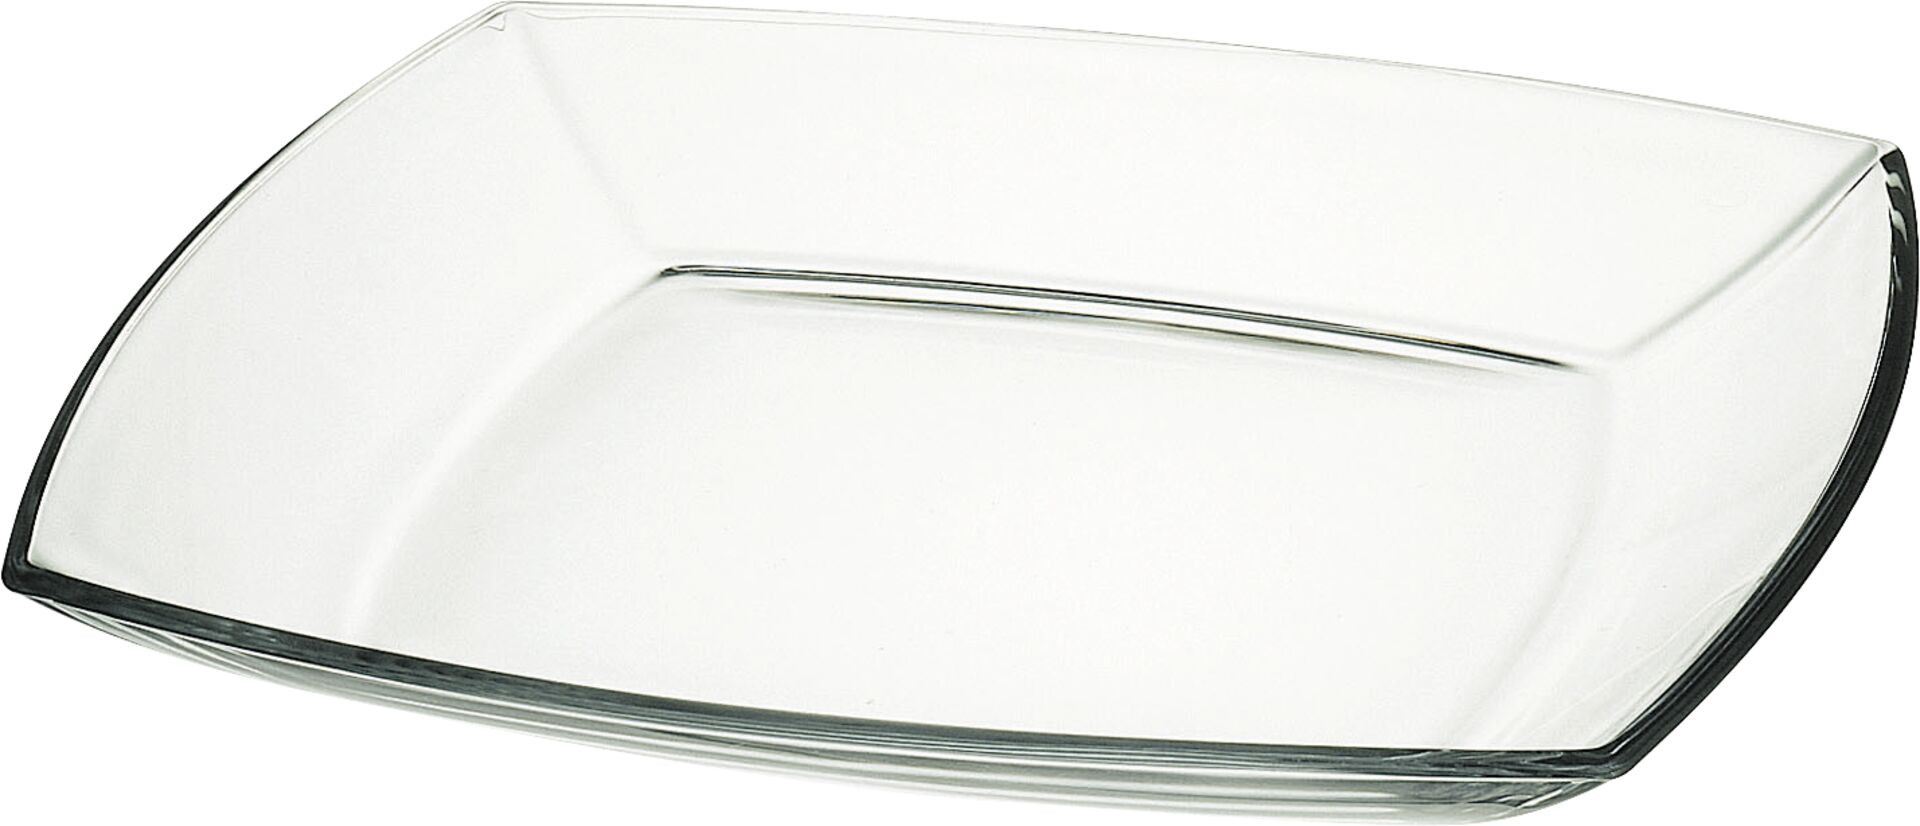 Glasschale "Tokio" flach 19,5 cm